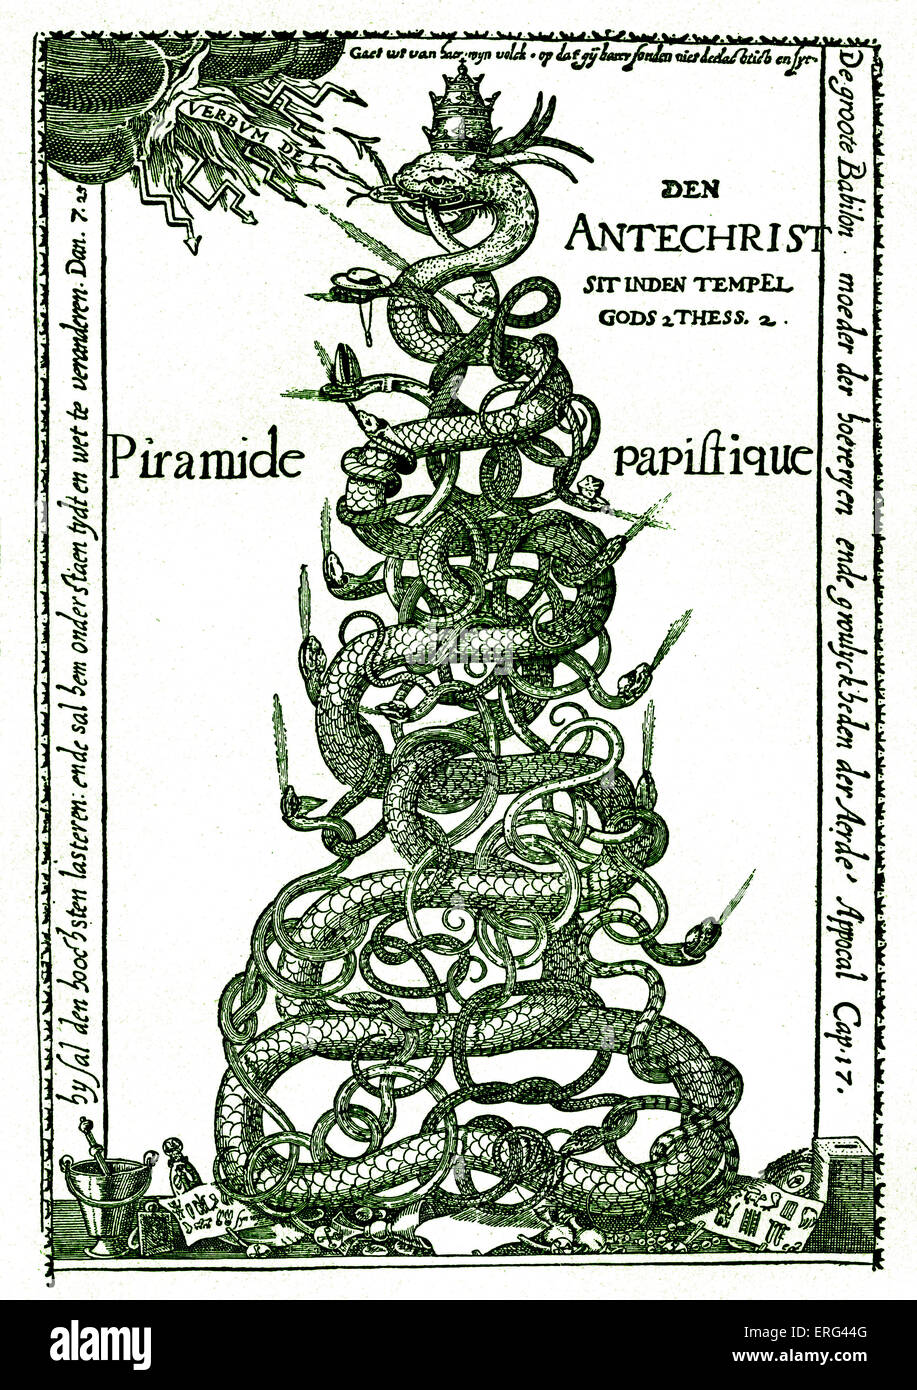 Niederländische satirische Gravur mit dem Titel "Der päpstlichen Pyramide".  Das Papsttum wird dargestellt als Pyramide von Schlangen, die angeschlagen auf der Stockfoto